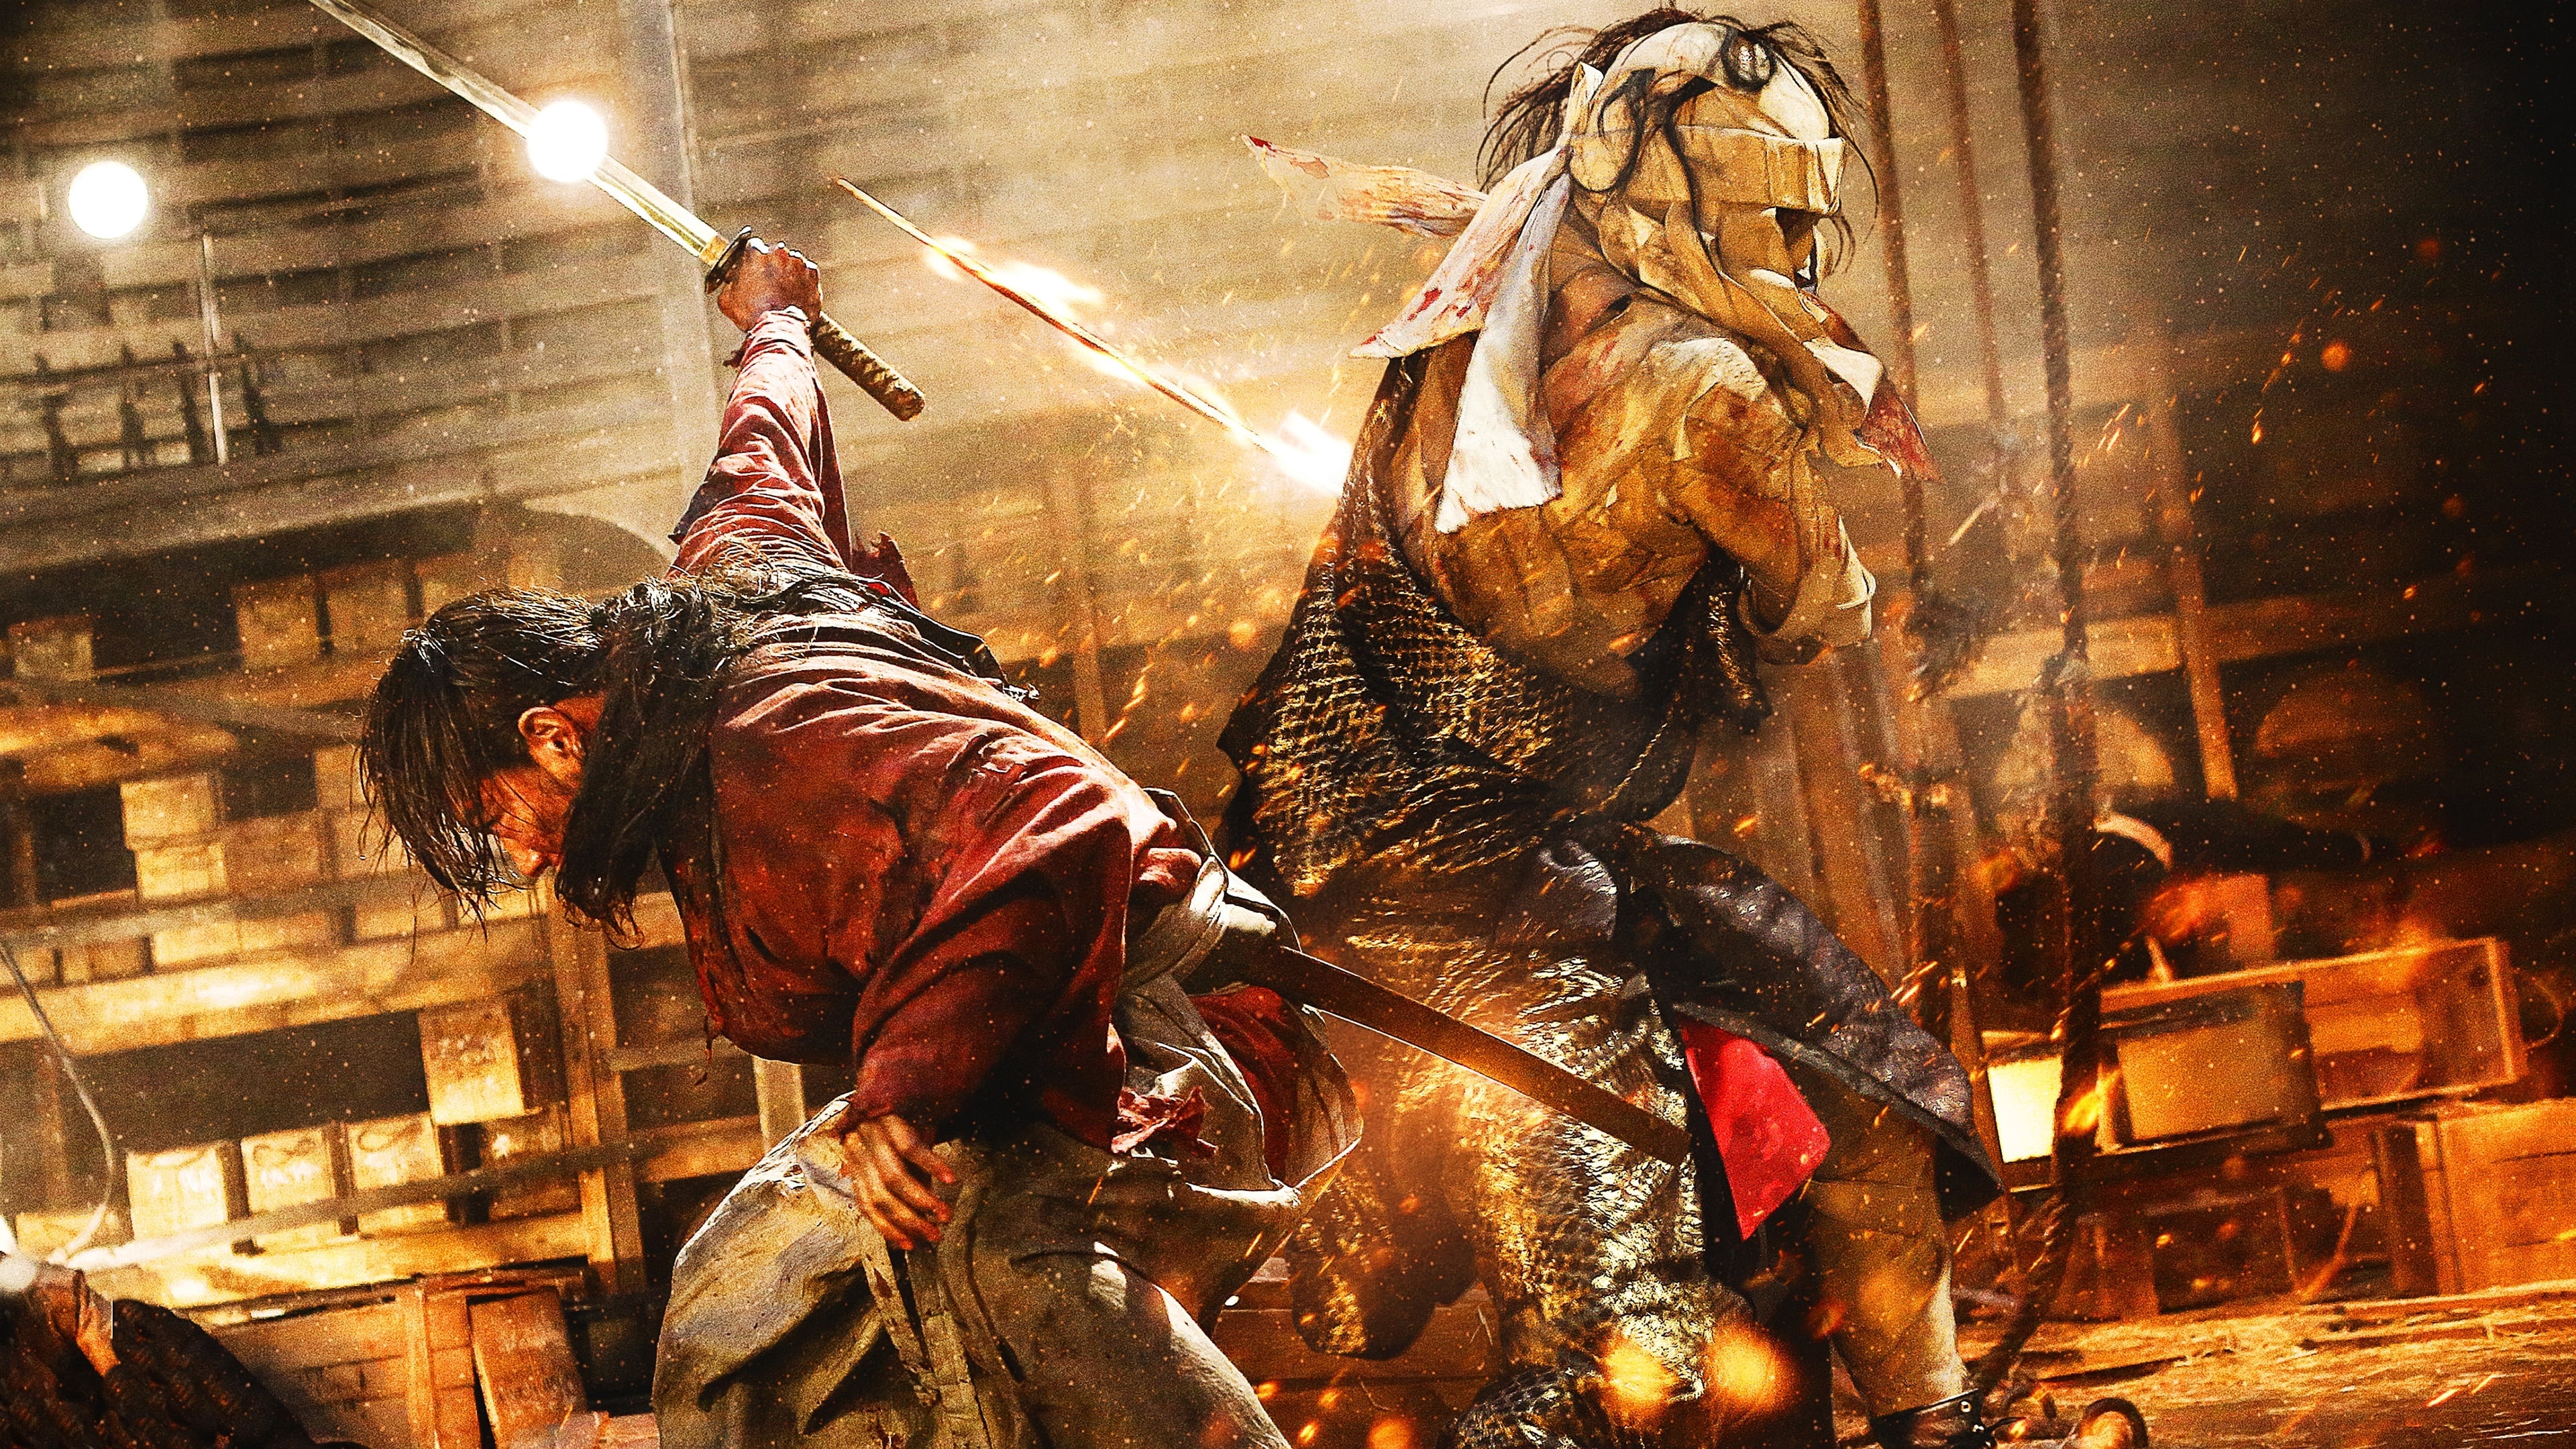 Kenshin, Rurouni Kenshin Part III The Legend Ends 2014, Movie backdrops, 3840x2160 4K Desktop